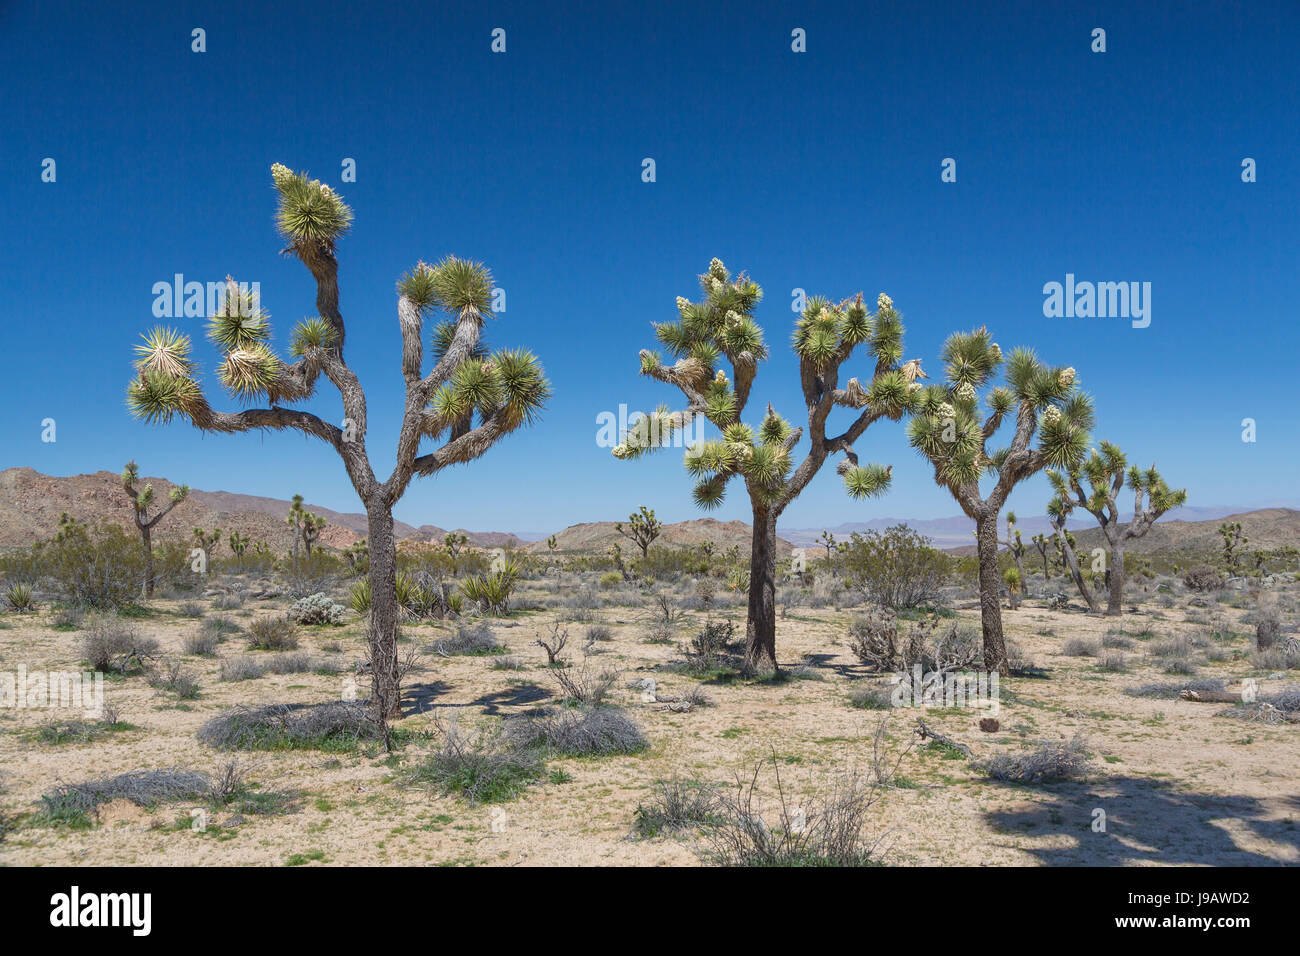 Joshua Bäume blühen im Joshua Tree Nationalpark, Kalifornien, USA  Stockfotografie - Alamy